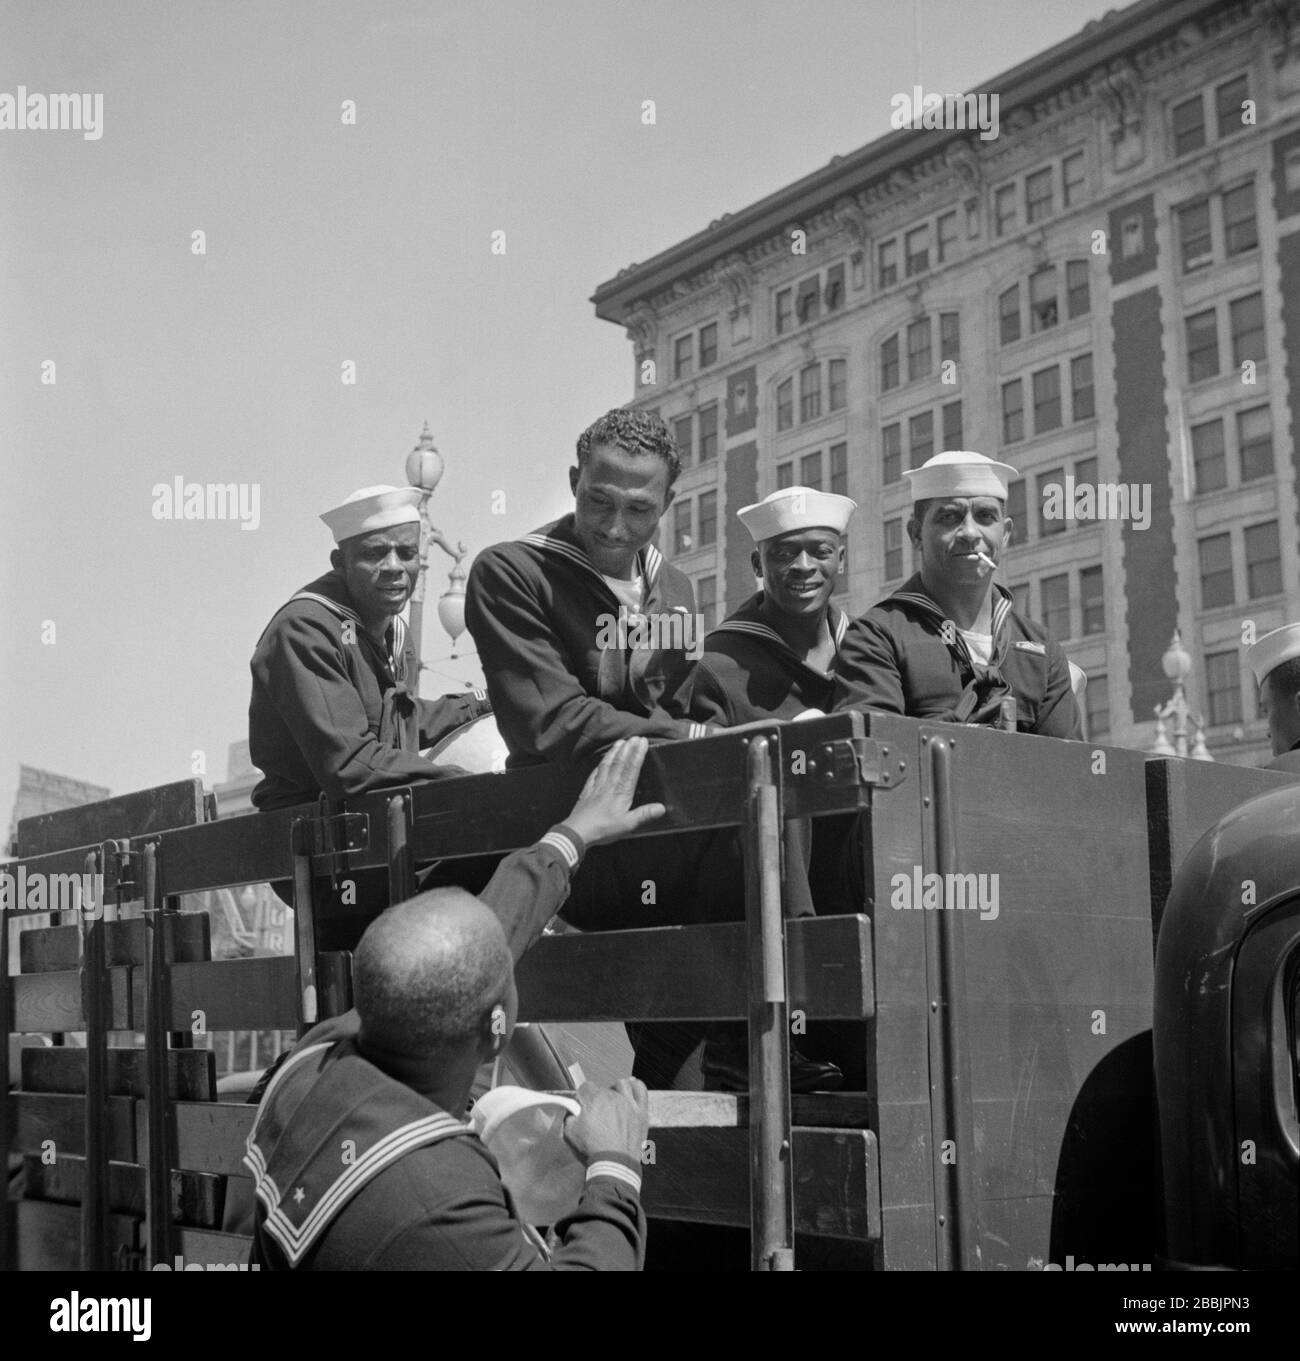 Gruppo di velisti statunitensi, New Orleans, Louisiana, USA, John Vachon, informazioni sull'Ufficio della Guerra degli Stati Uniti, marzo 1943 Foto Stock